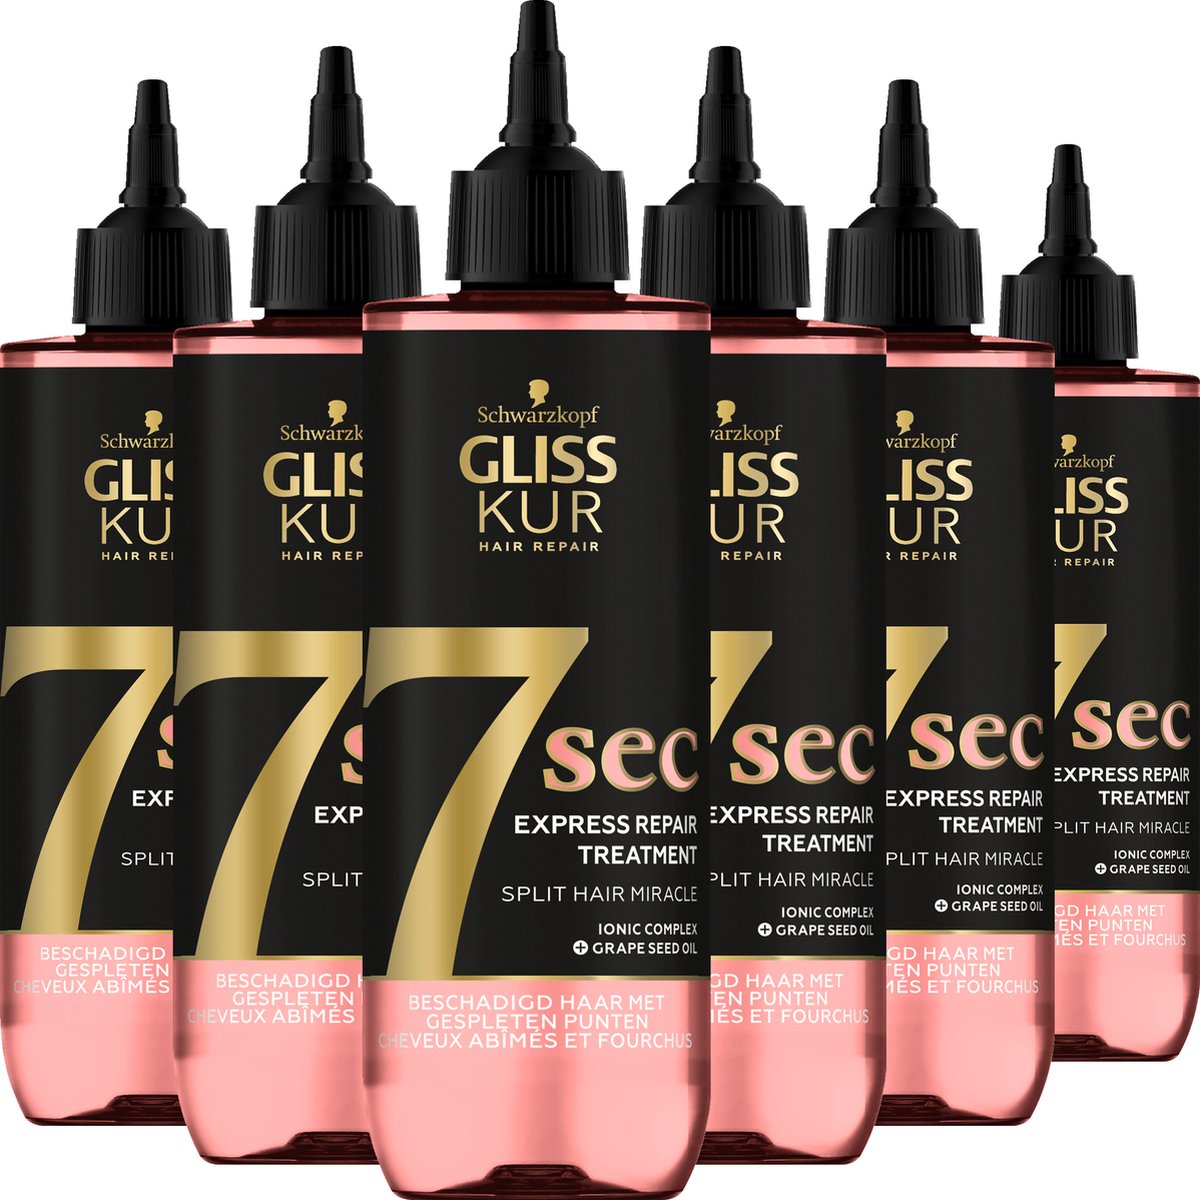 Gliss - Split Hair Miracle - 7 sec Express Repair Treatment - Haarverzorging - Voordeelverpakking - 6 x 200 ml